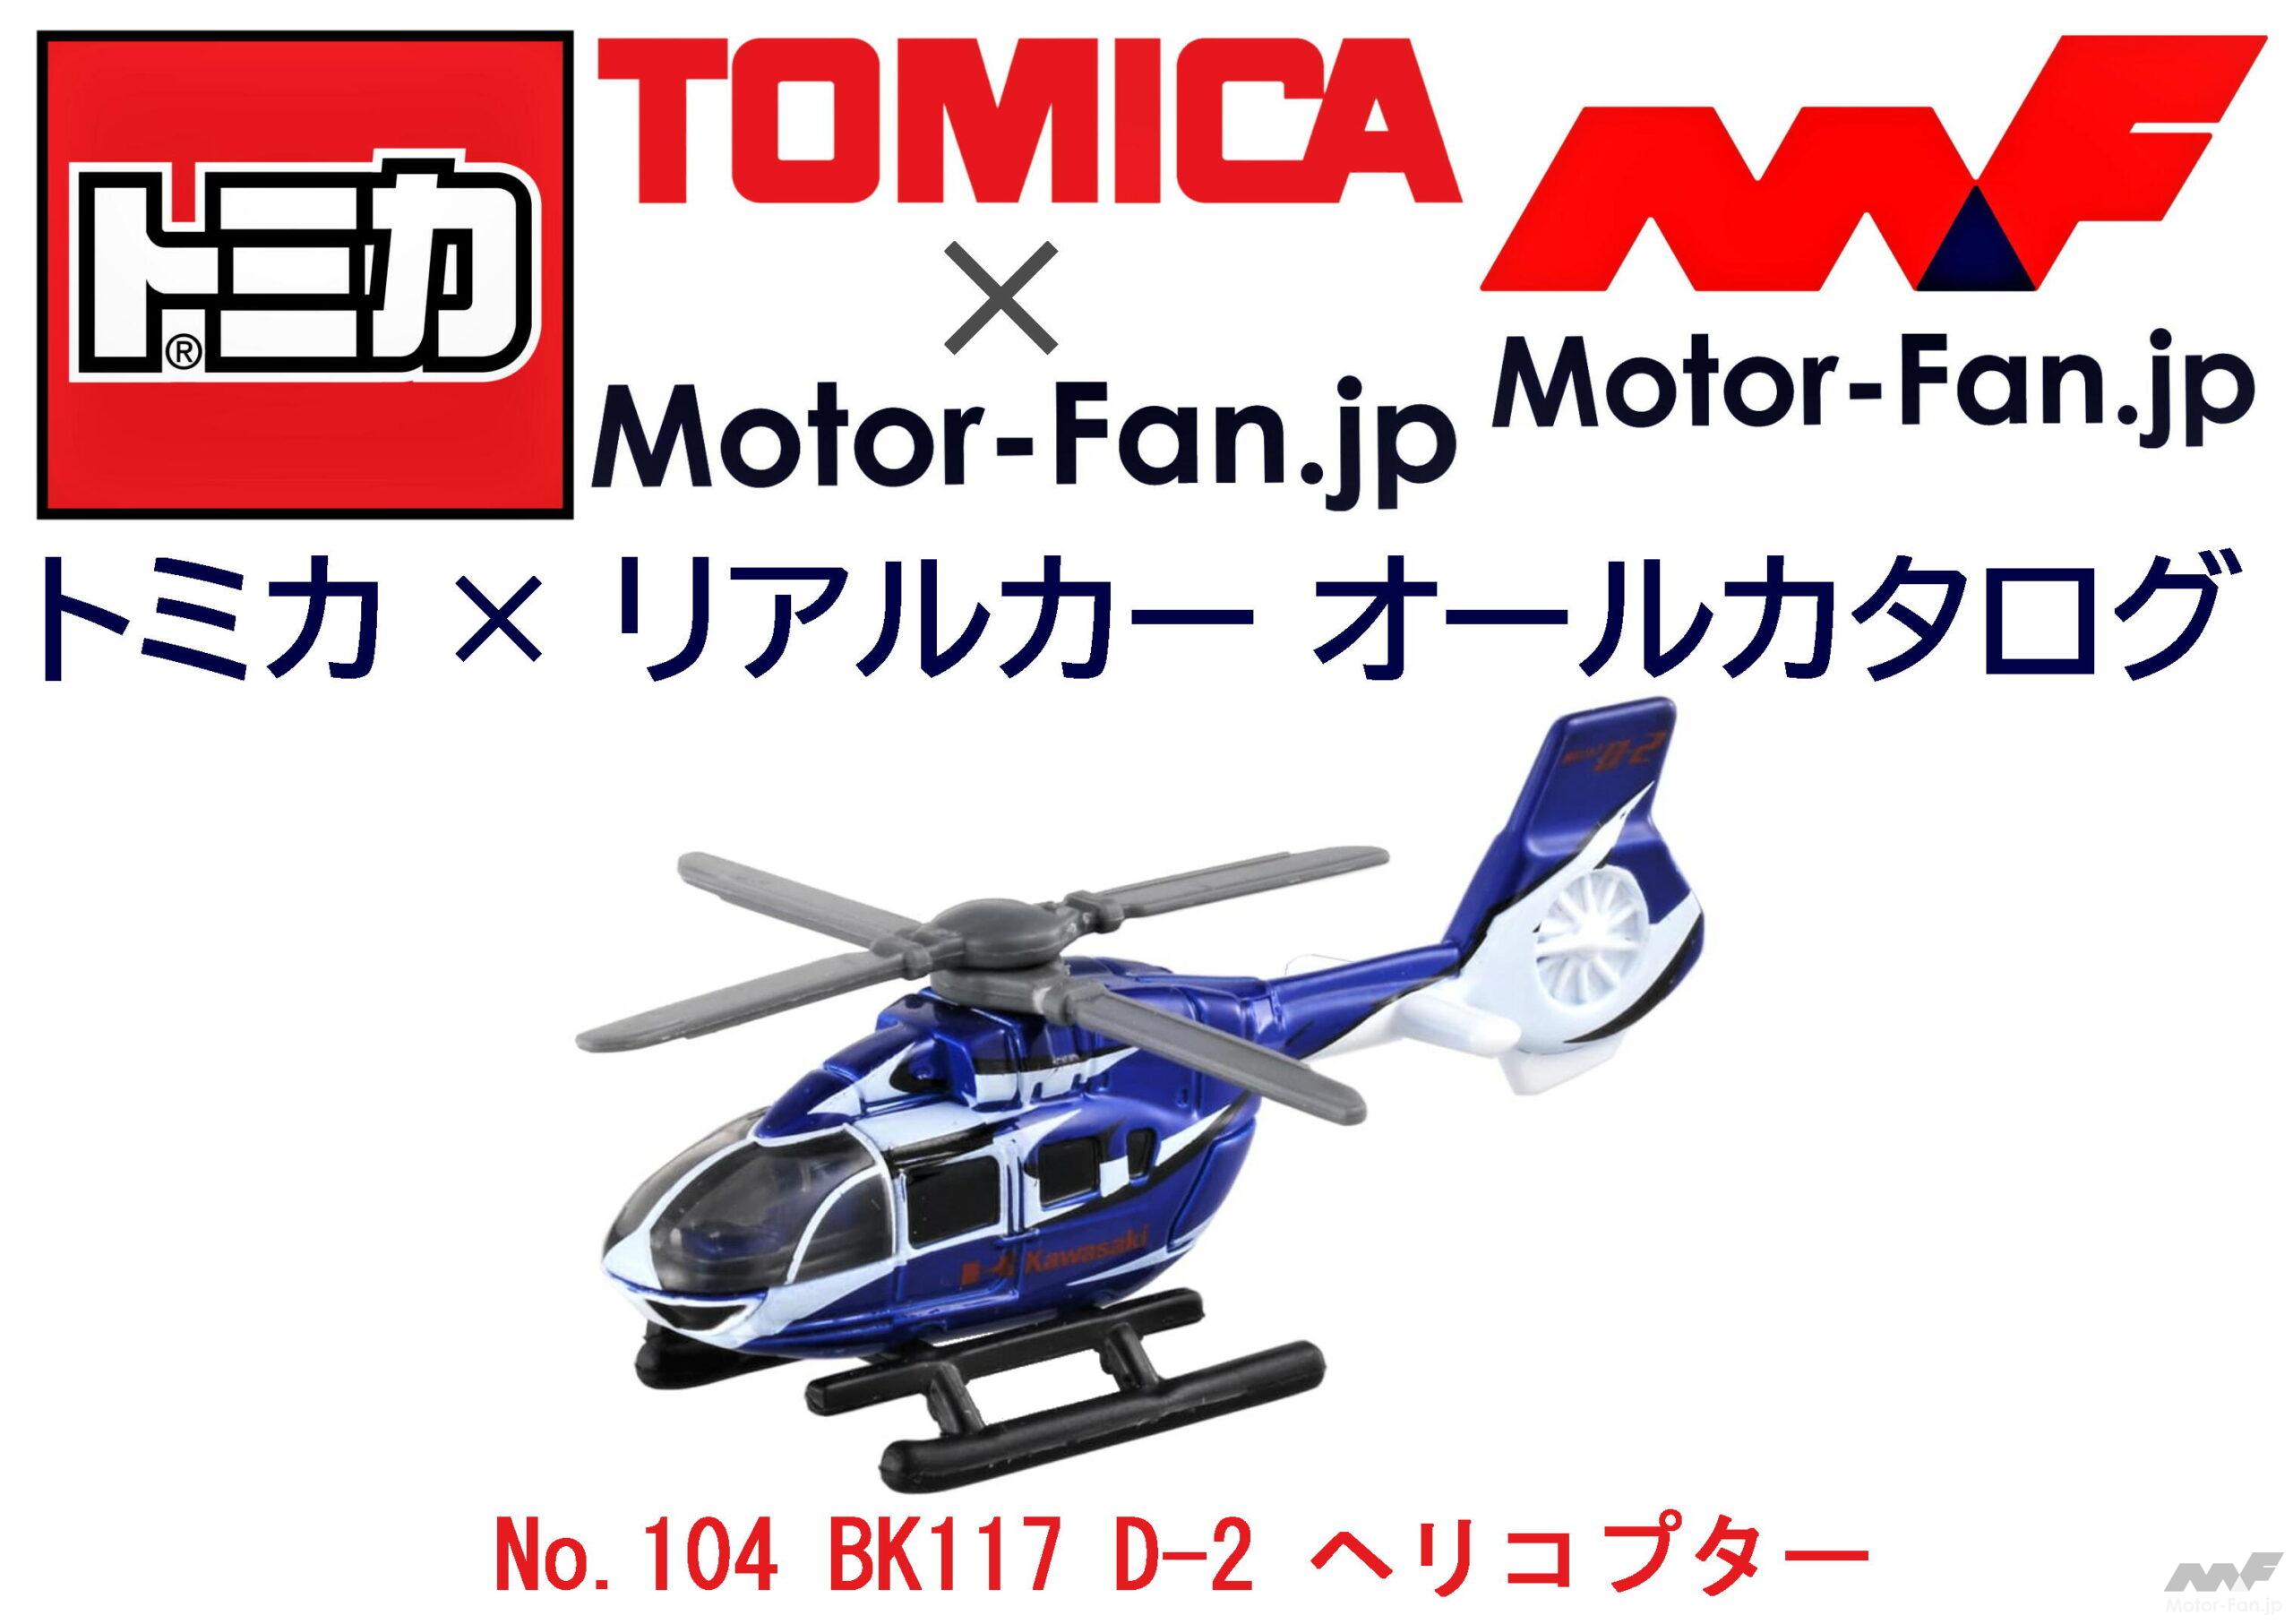 恐るべし、『トミカ』! 実はカワサキの新鋭ヘリコプターもラインアップ